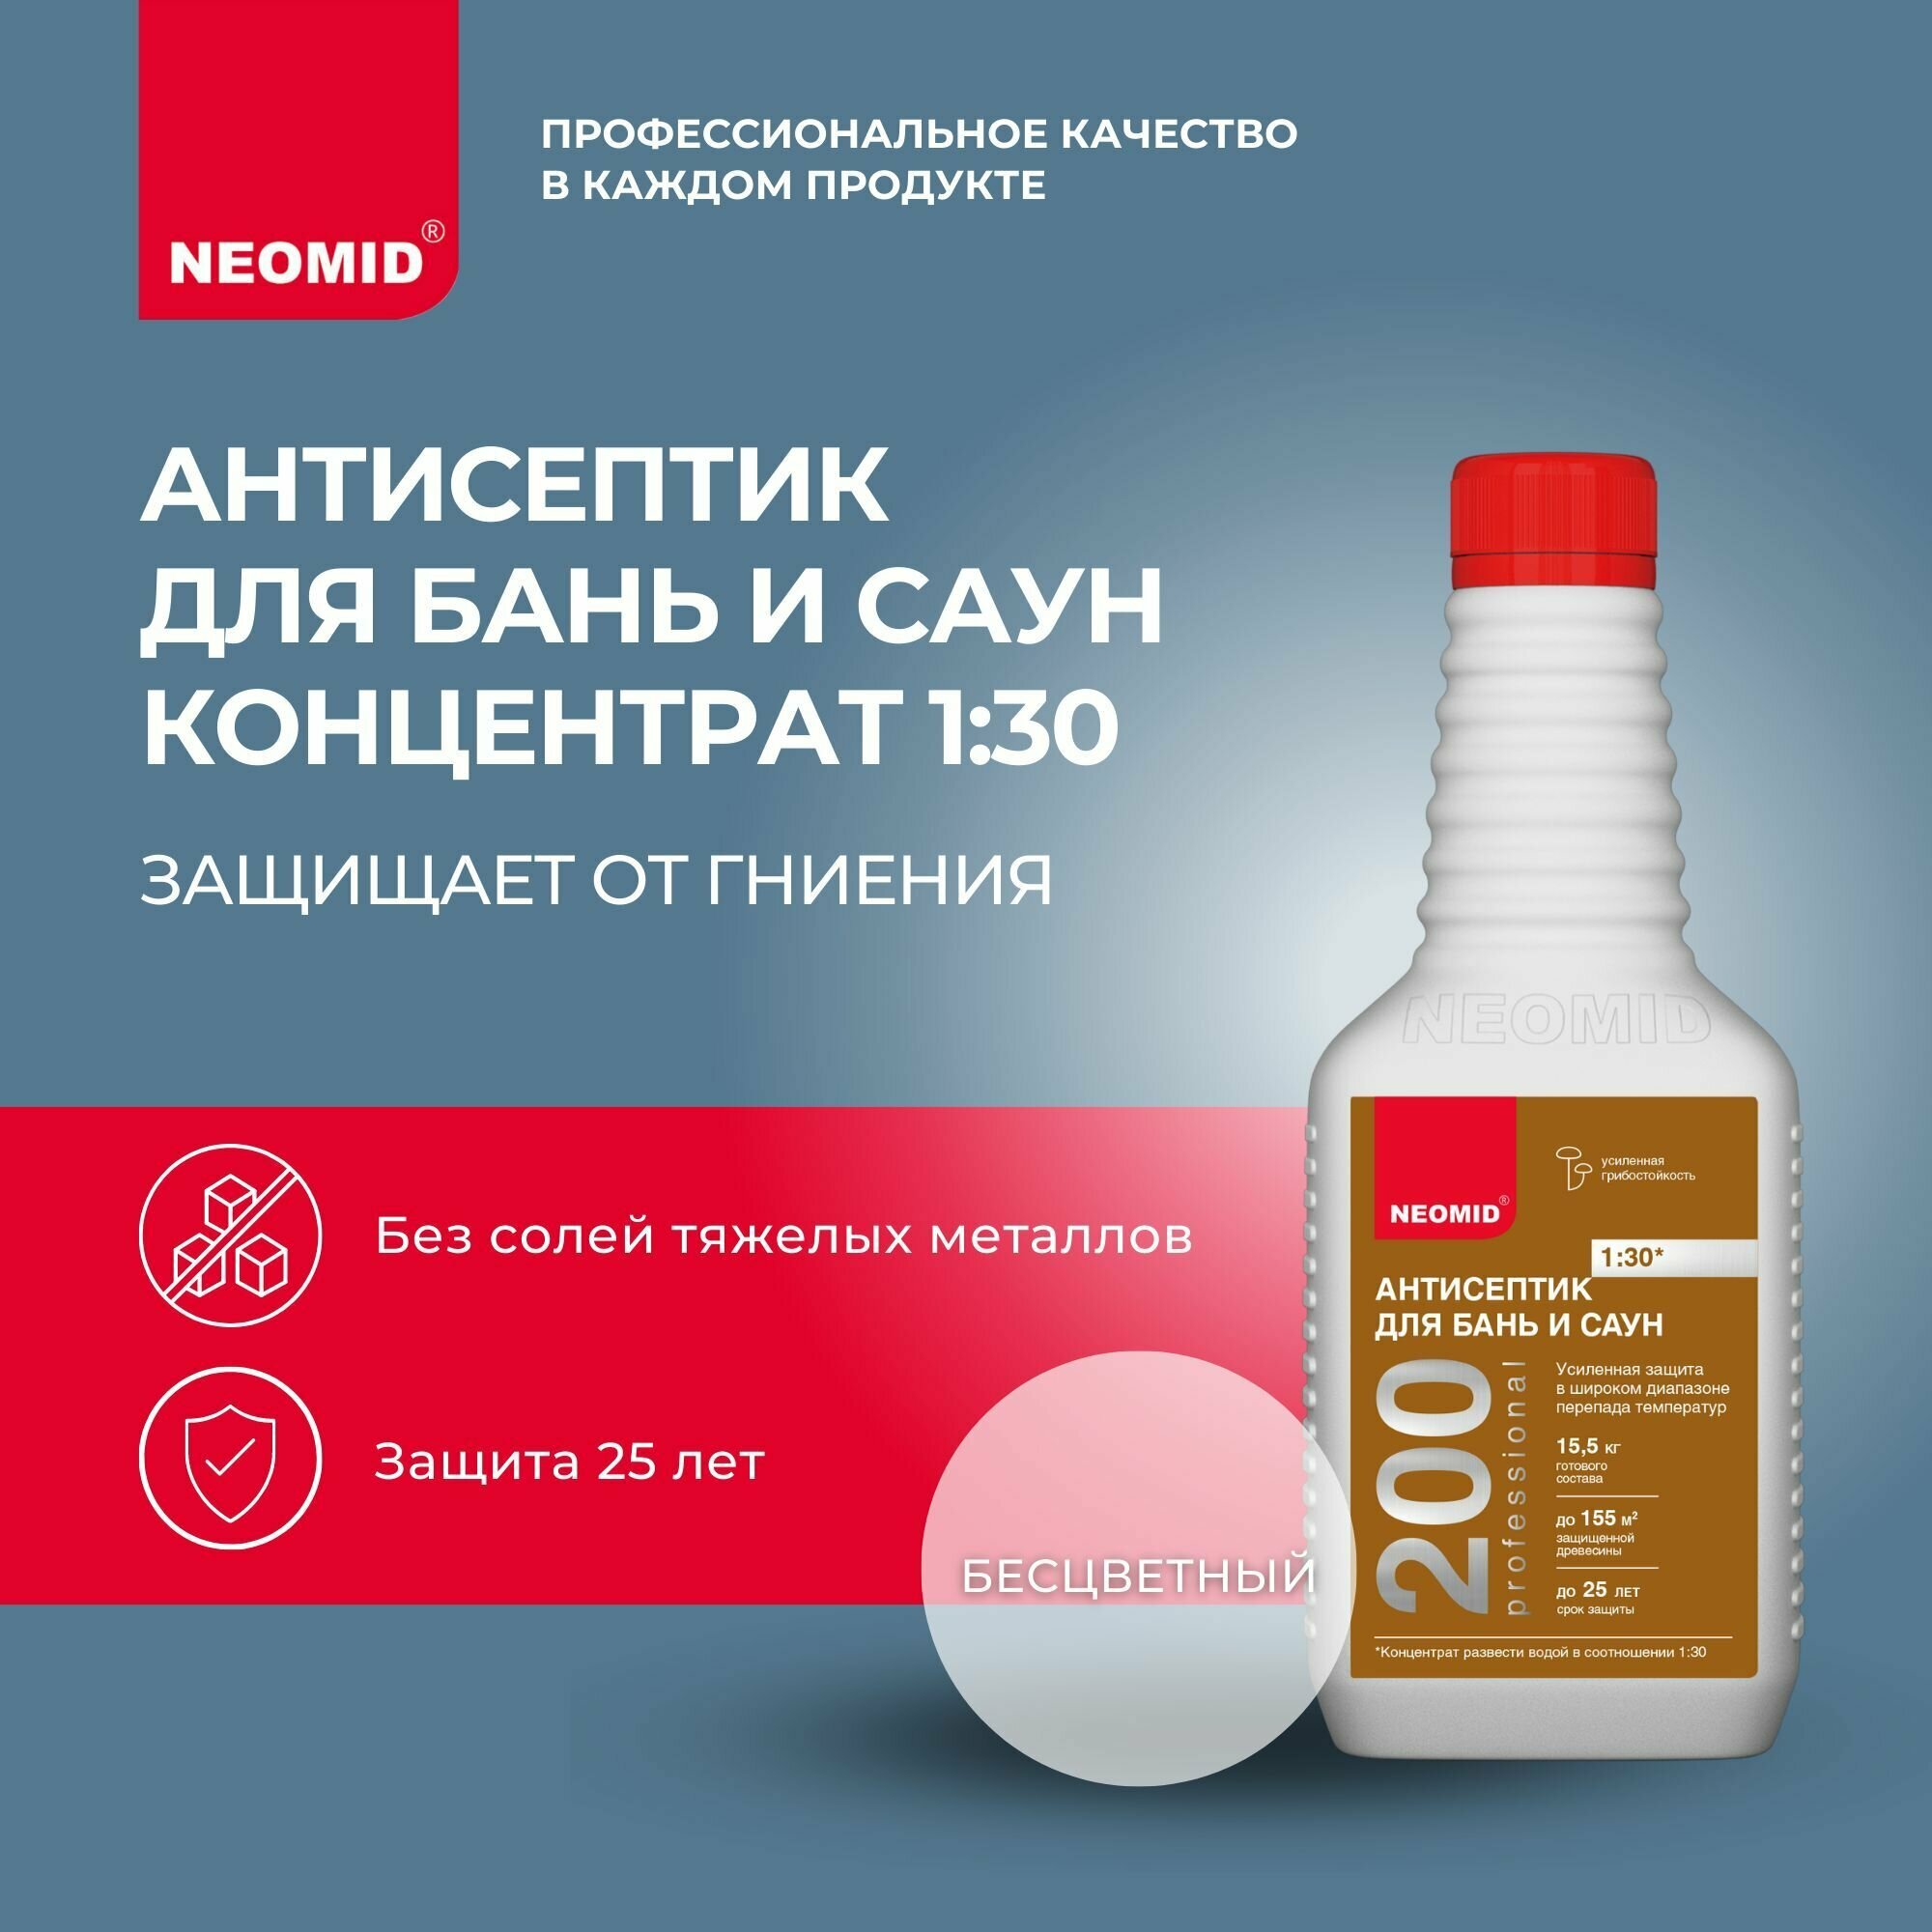 Биоцидная пропитка NEOMID антисептик 200 для бань и саун, 0.5 л, бесцветный - фотография № 1